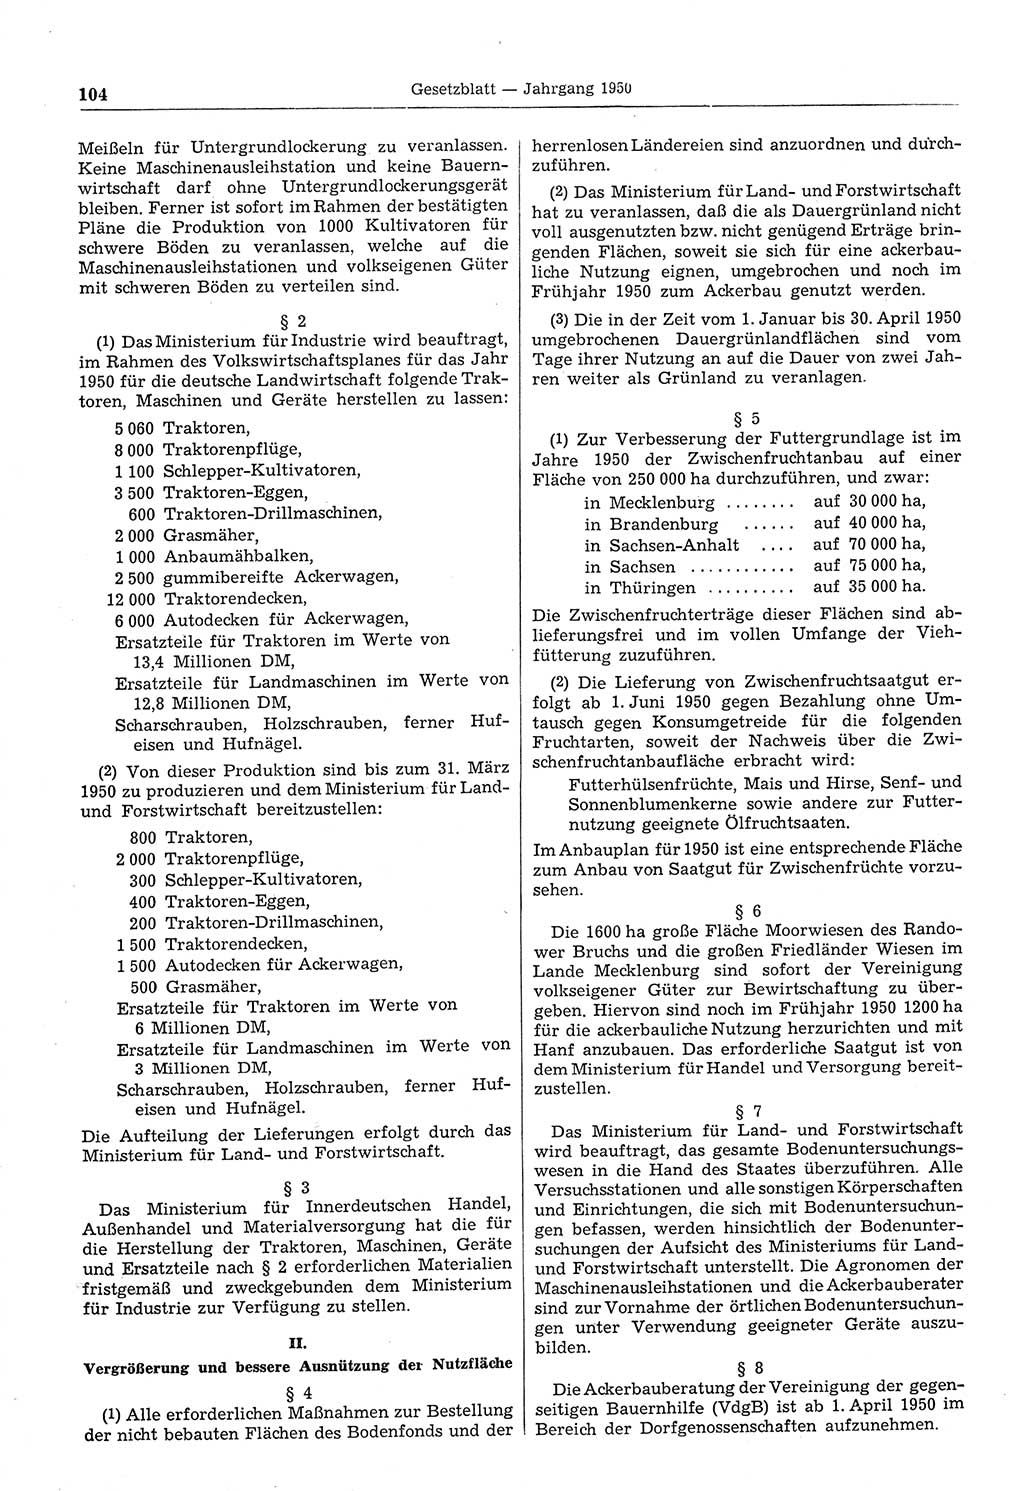 Gesetzblatt (GBl.) der Deutschen Demokratischen Republik (DDR) 1950, Seite 104 (GBl. DDR 1950, S. 104)